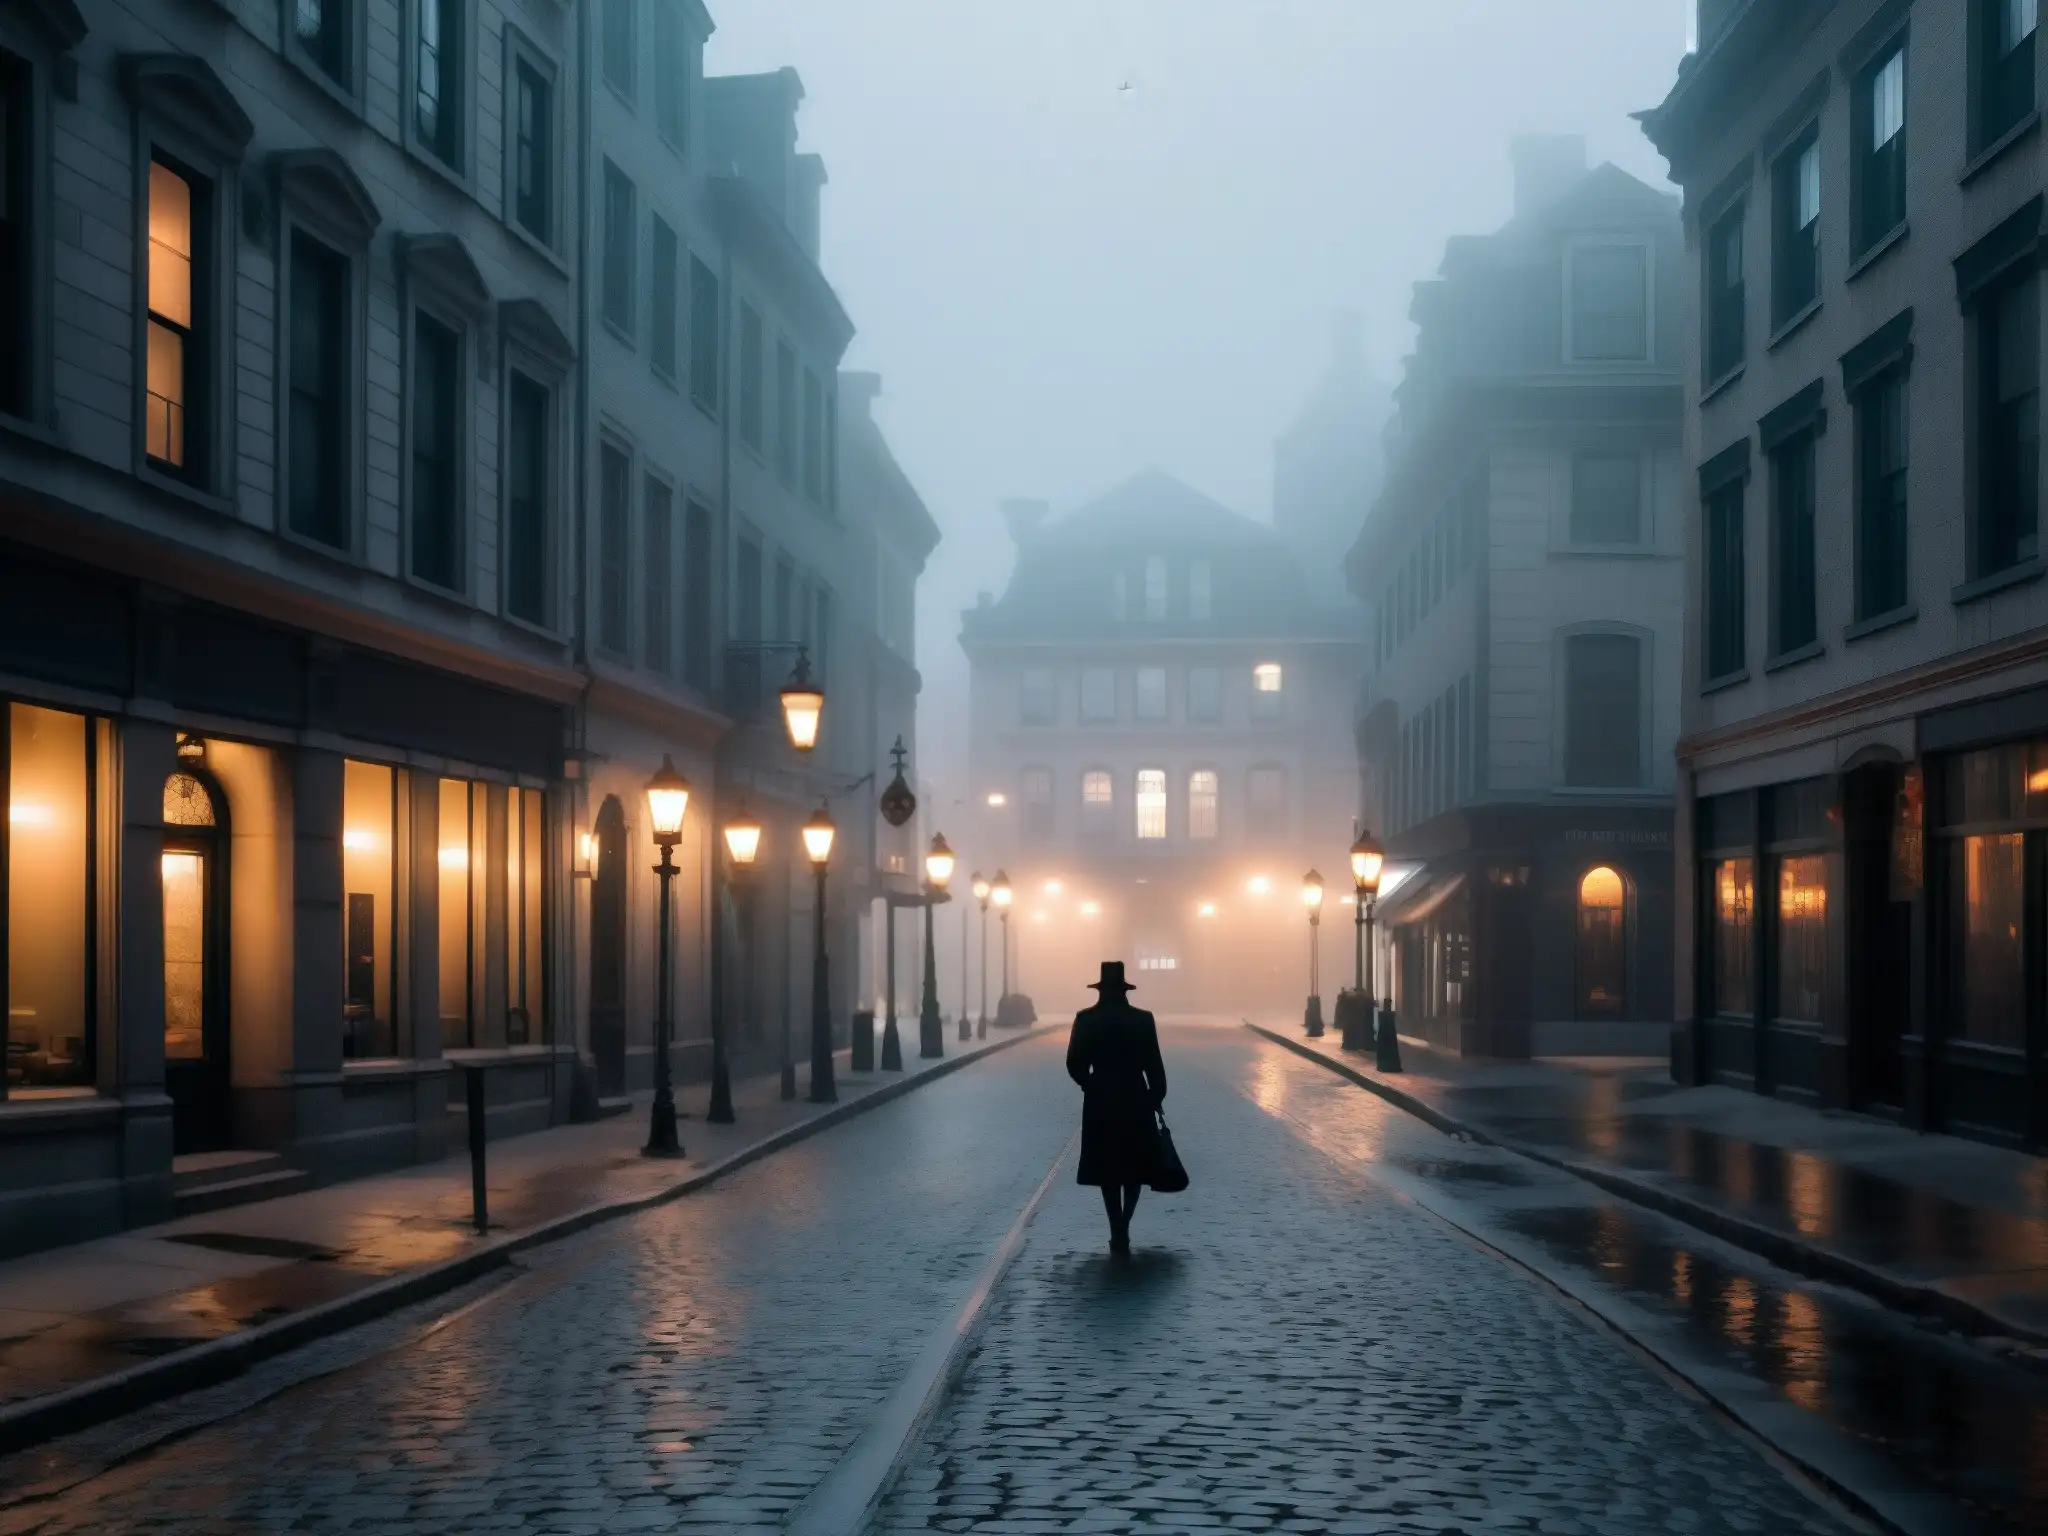 Un viejo vampiro pasea por la tenebrosa Rue SainteCatherine en Montreal, envuelto en una atmósfera misteriosa y sobrenatural